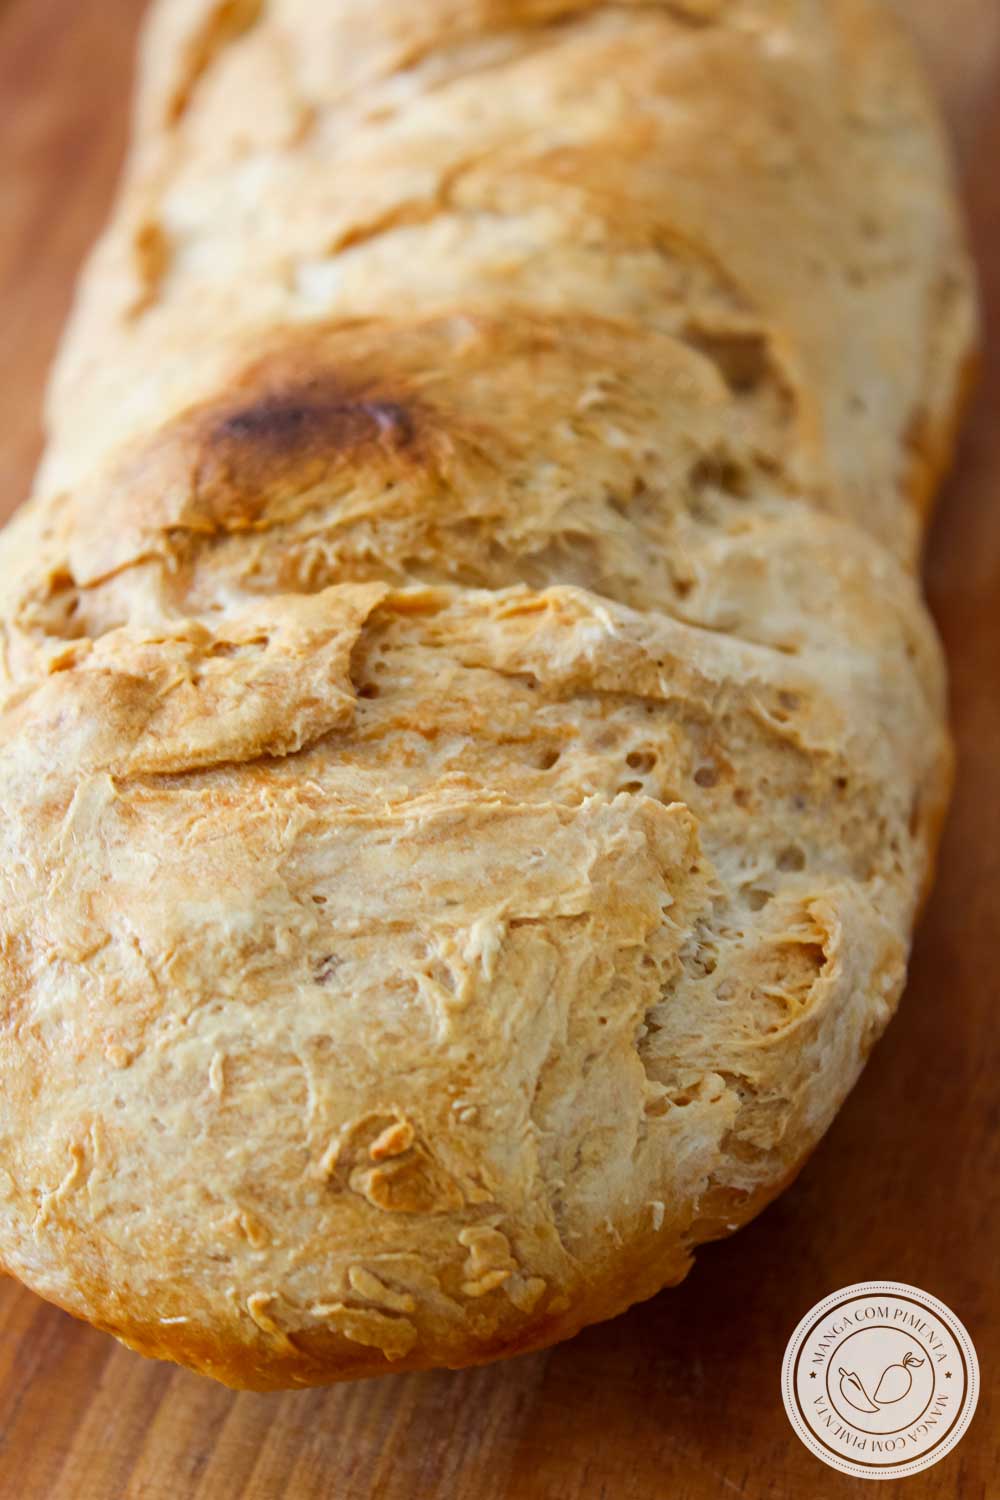 Receita de Pão Italiano - Pão Rústico para o café da manhã, lanche da tarde ou para acompanhar aquele prato italiano na hora do almoço.